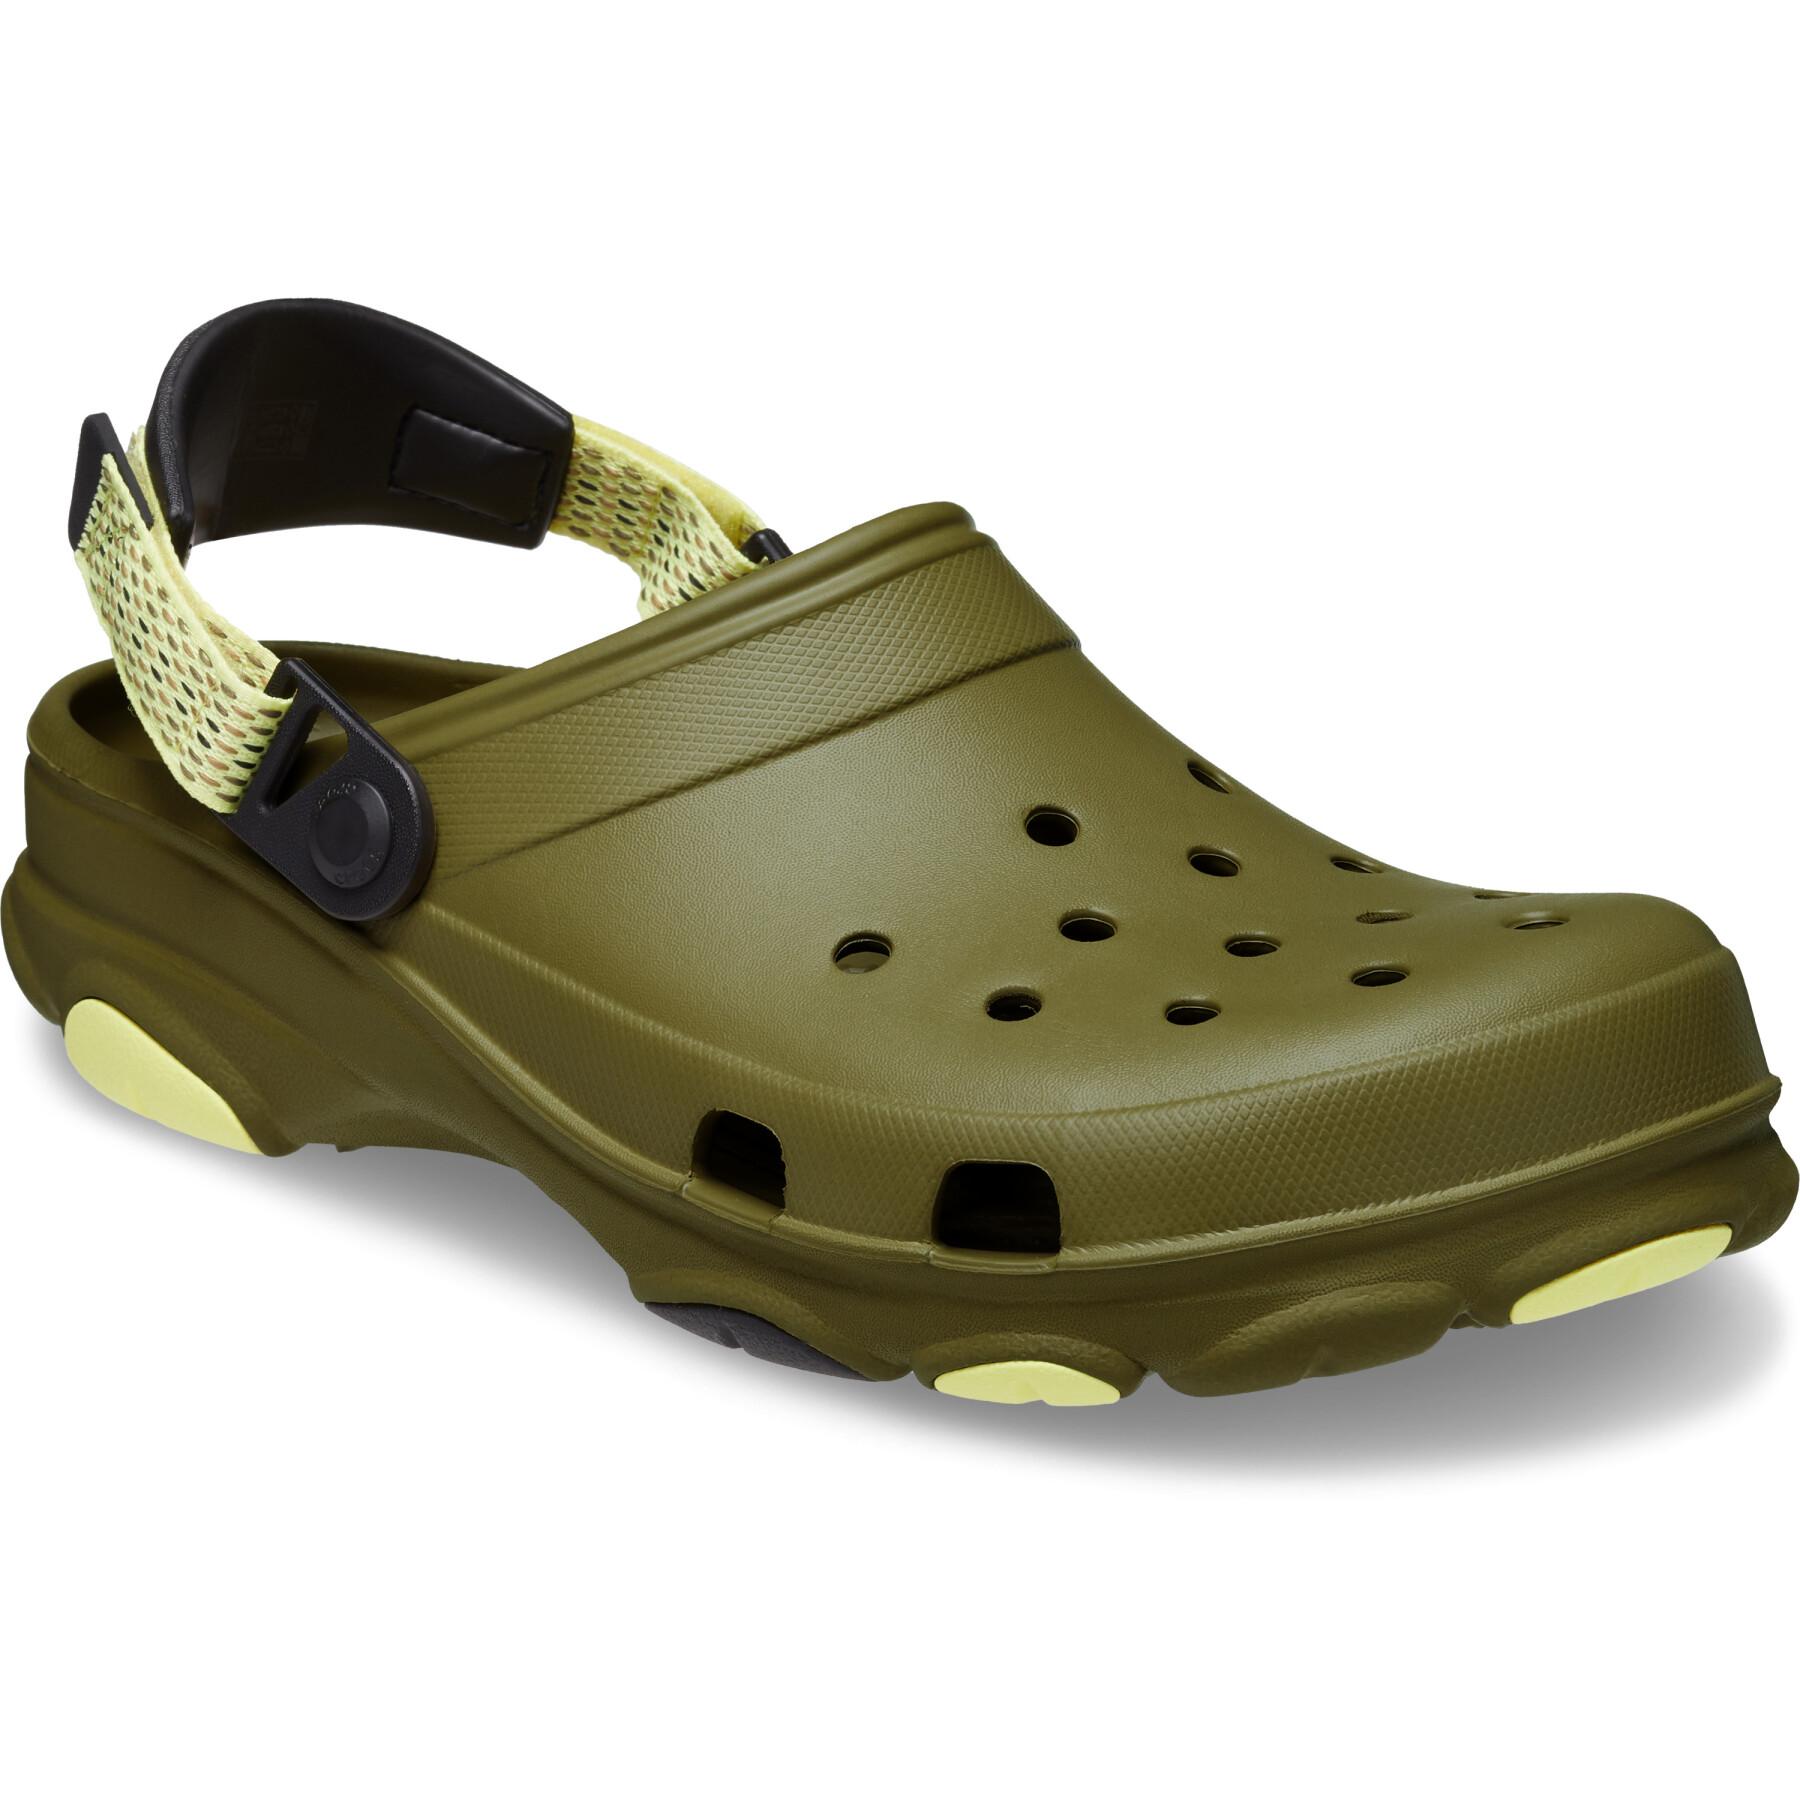 Classic all terrain clogs Crocs